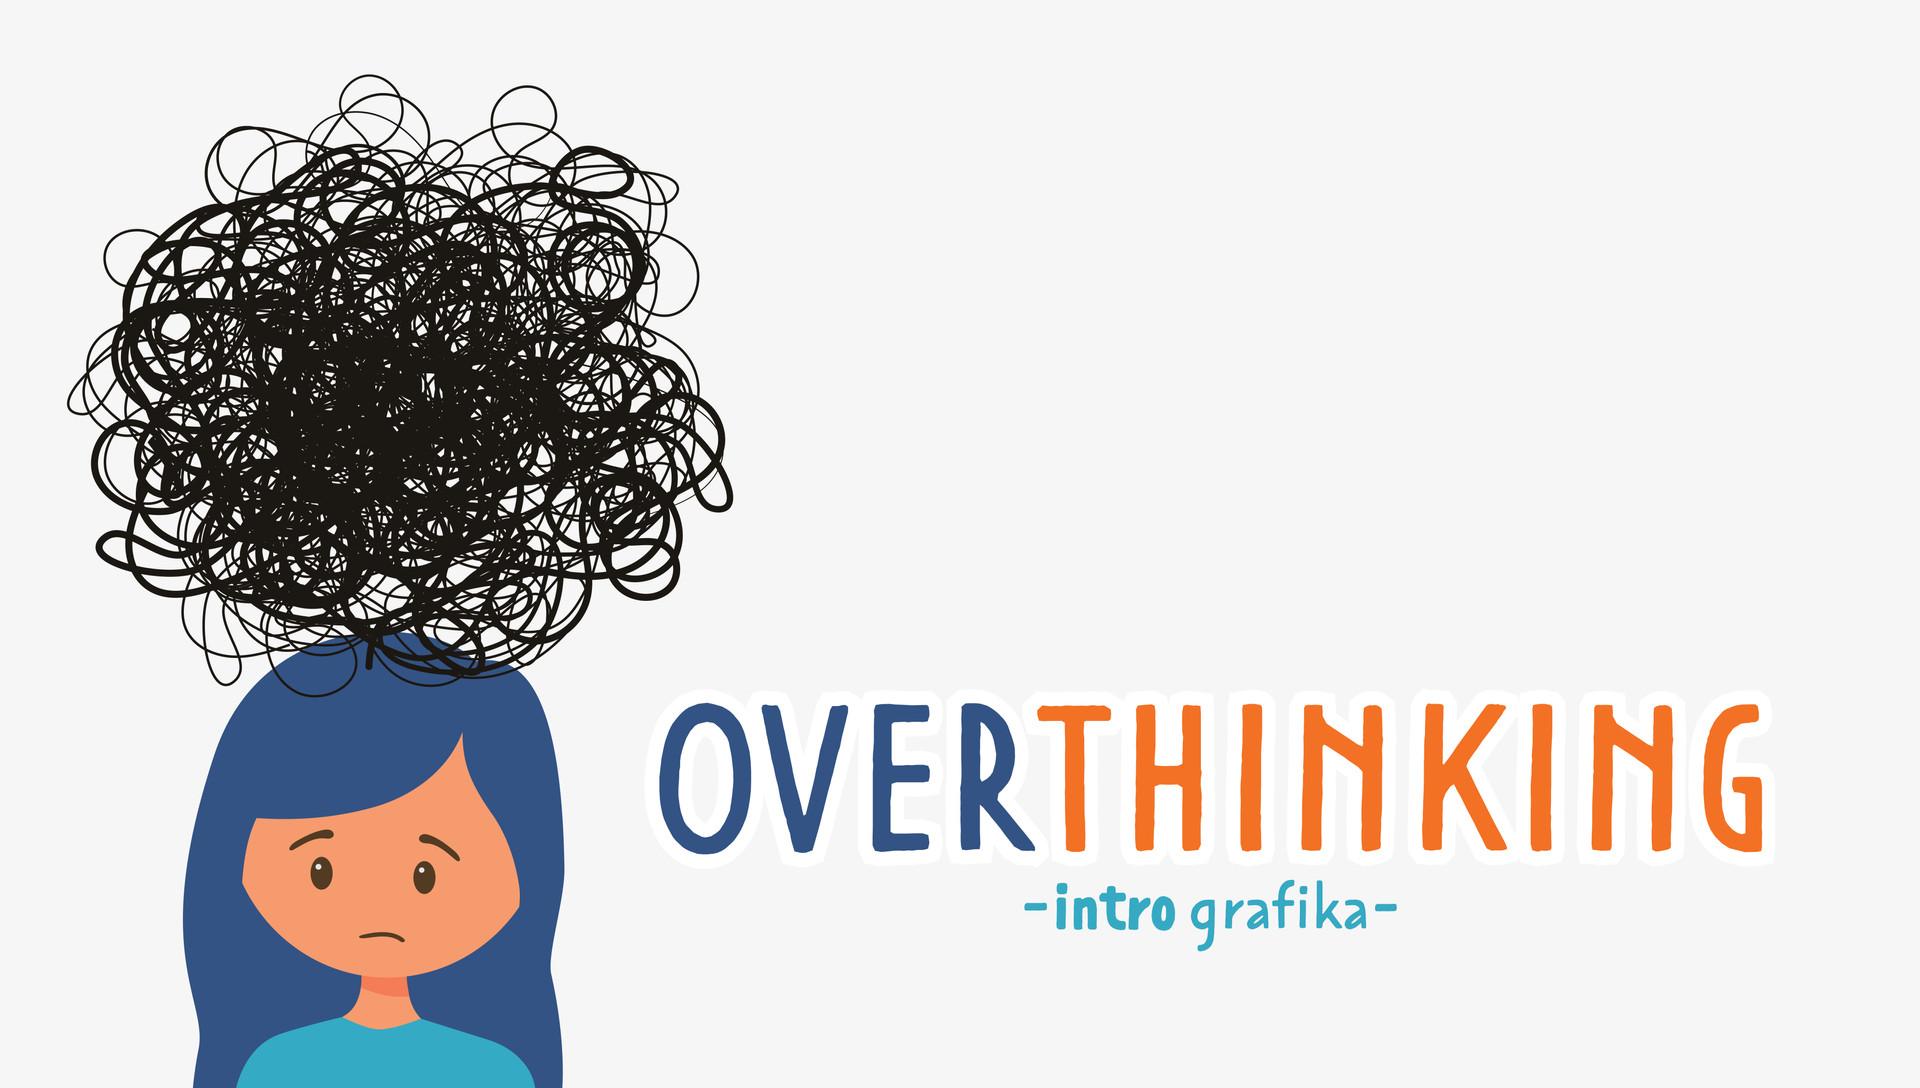 INTROgrafika] Overthinking